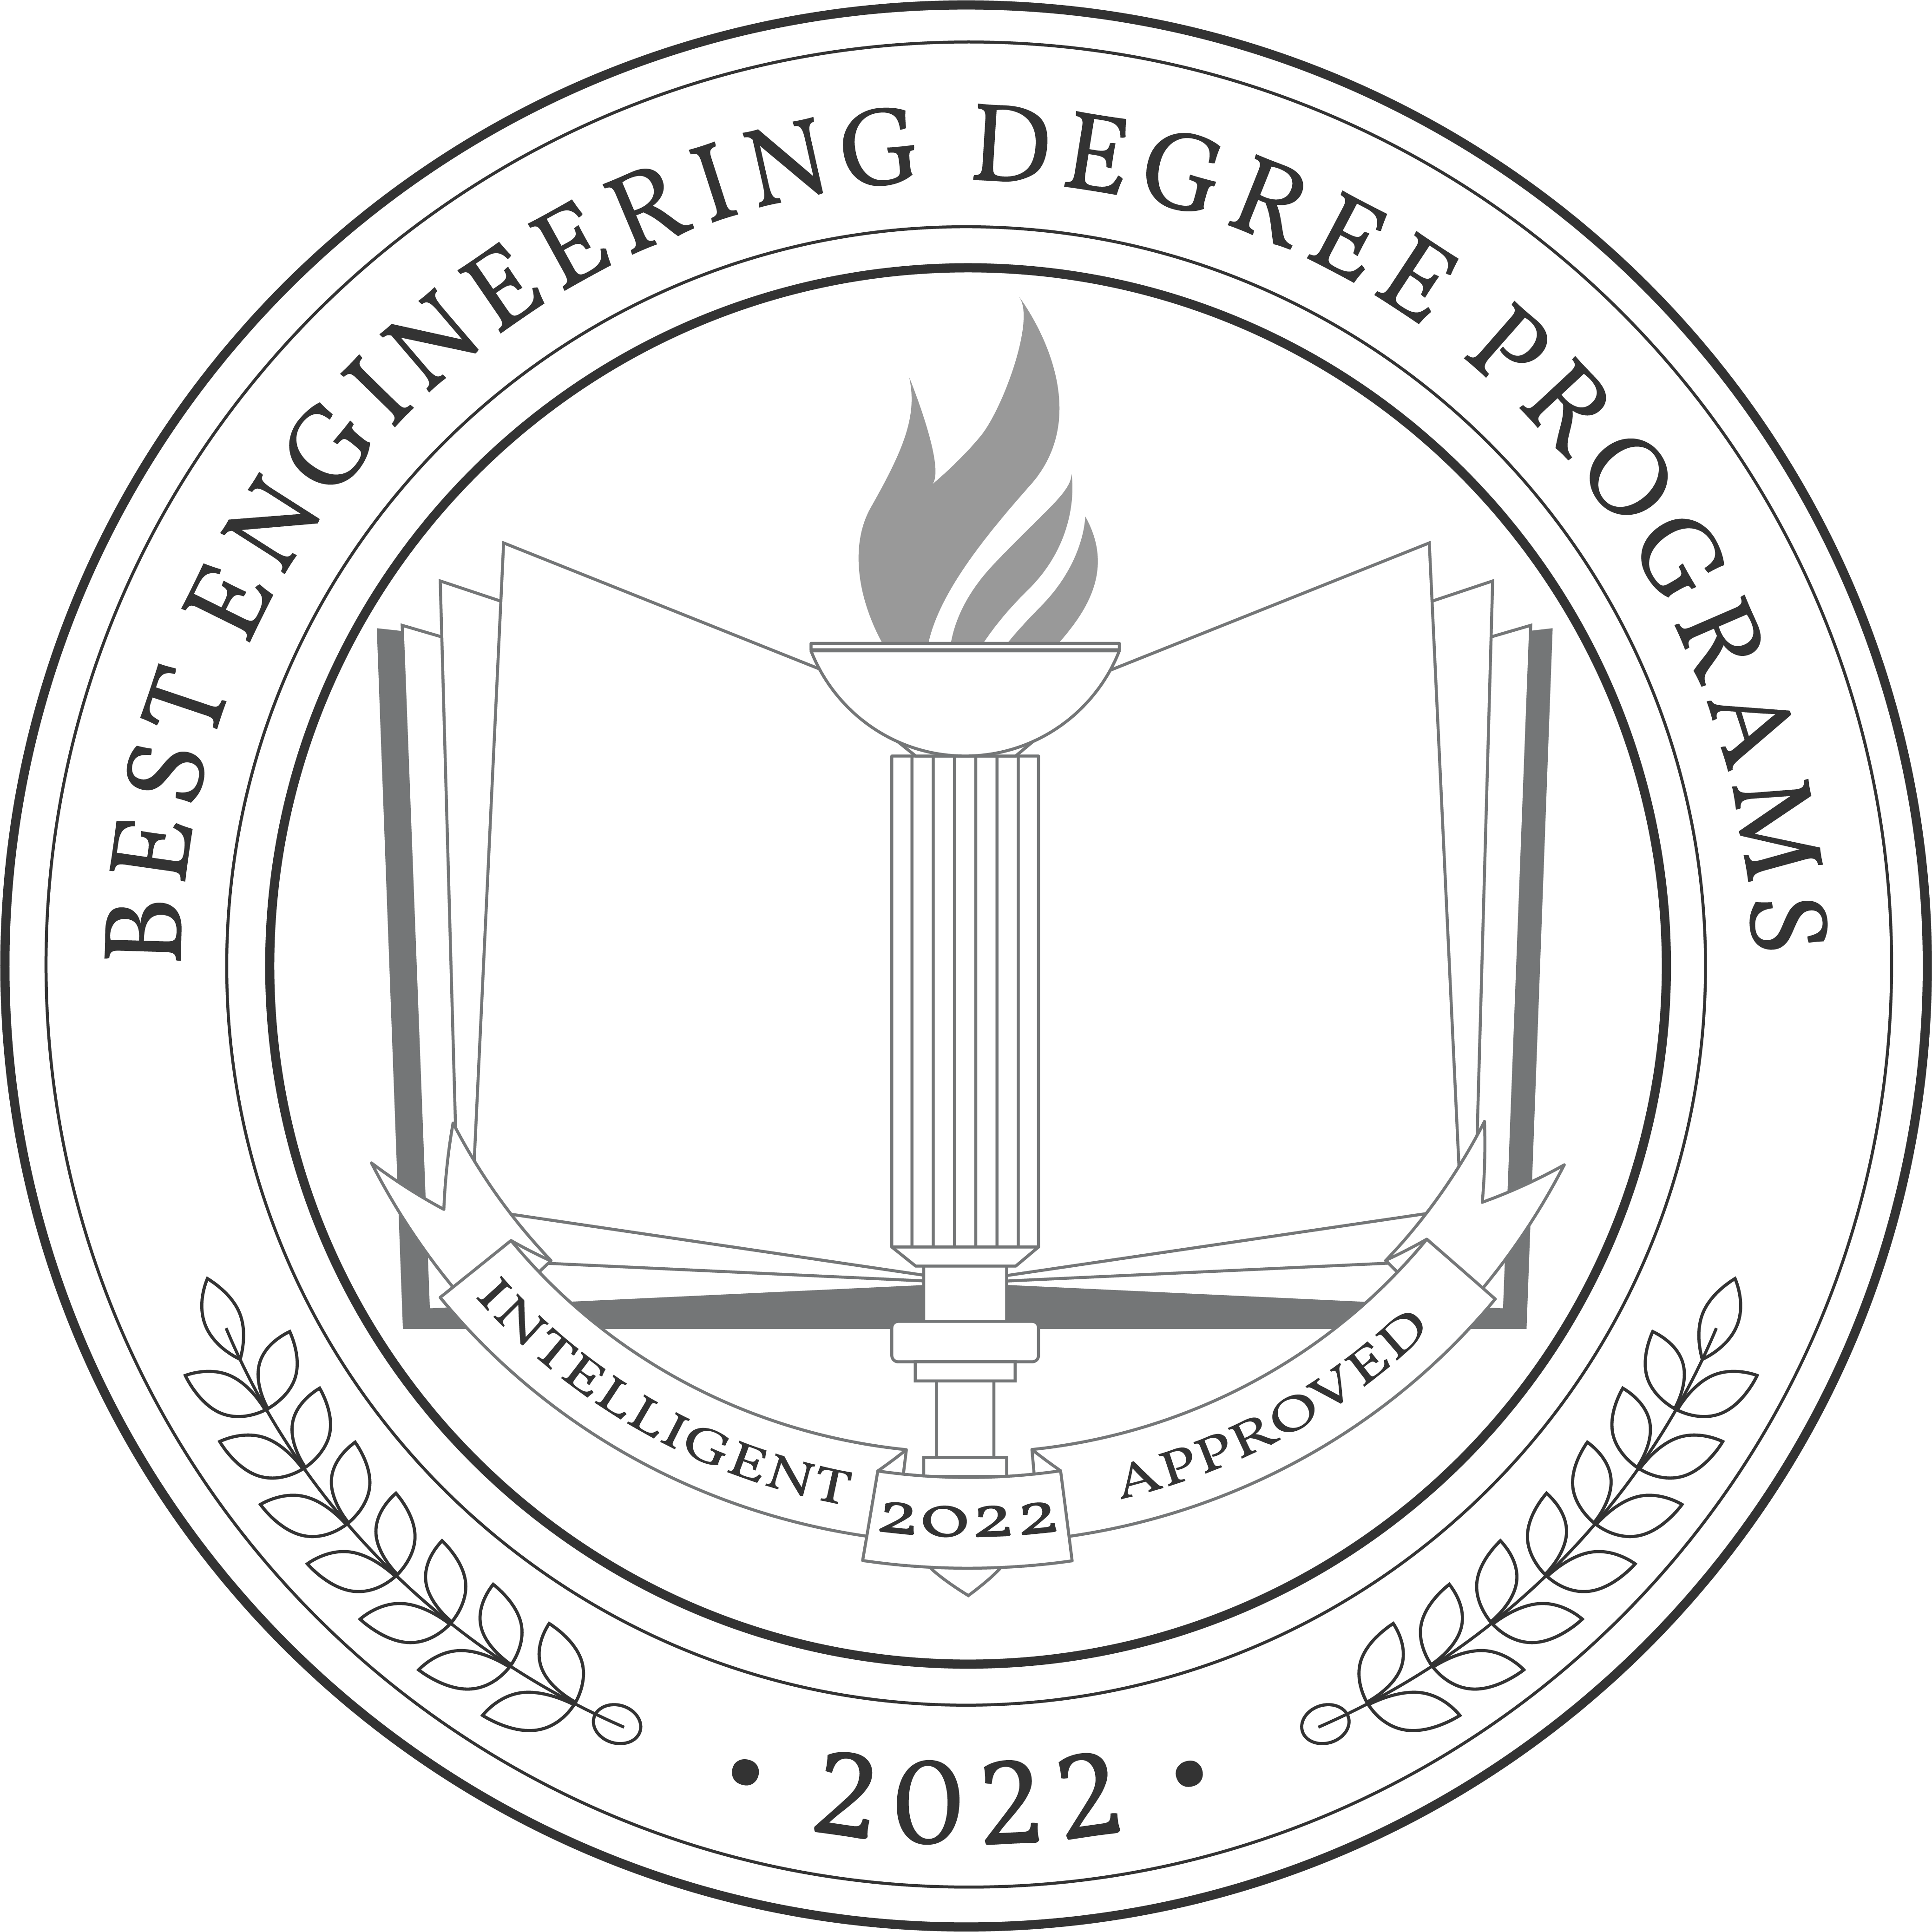 Best-Engineering-Degree-Programs-Badge-1.png